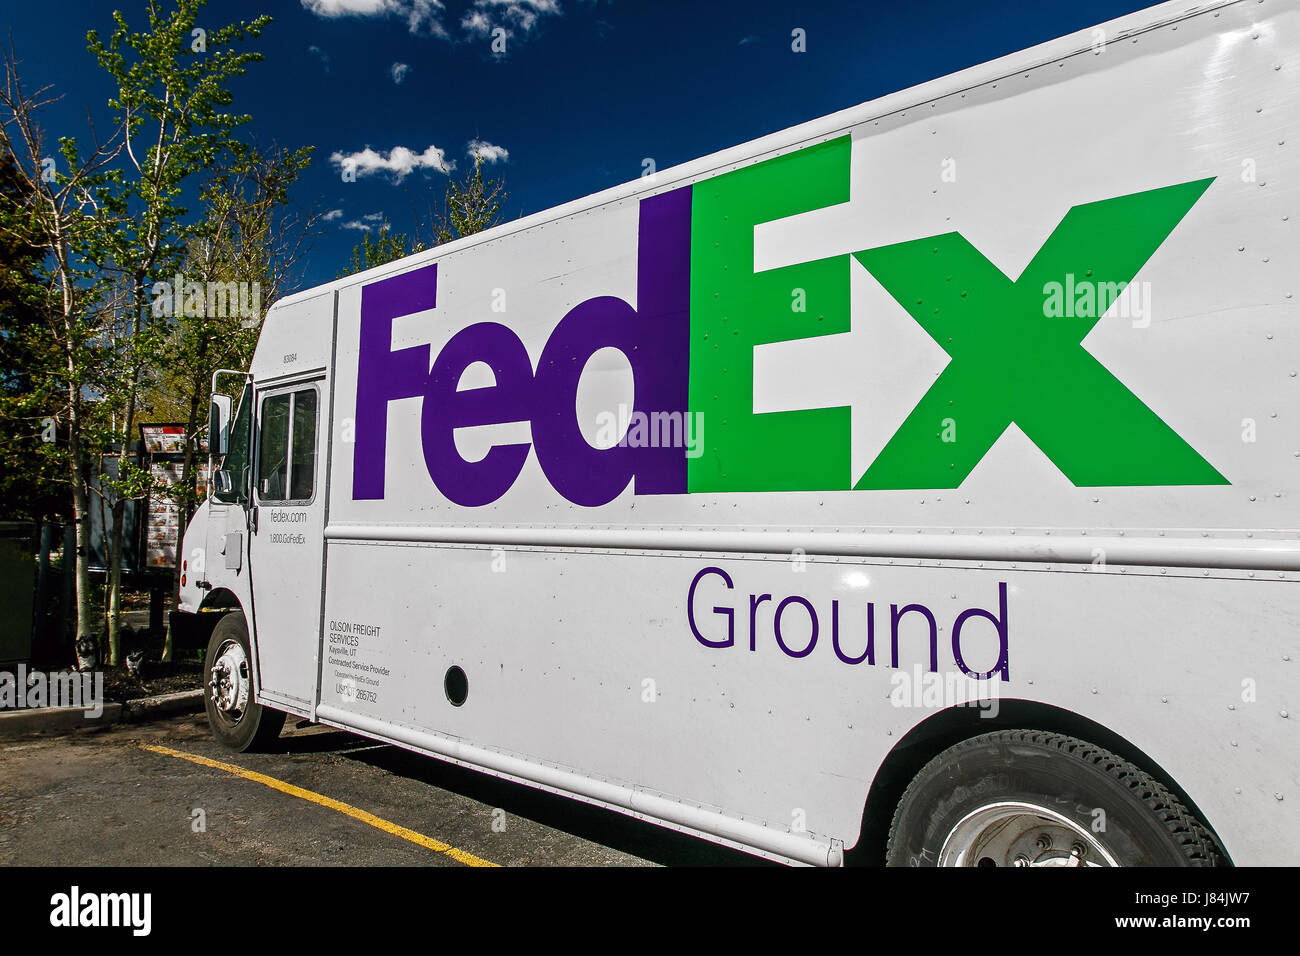 Park City, Utah, 12 mai 2017 : soleil clair shiines sur un côté d'un camion blanc FedEx Ground en stationnement. Banque D'Images